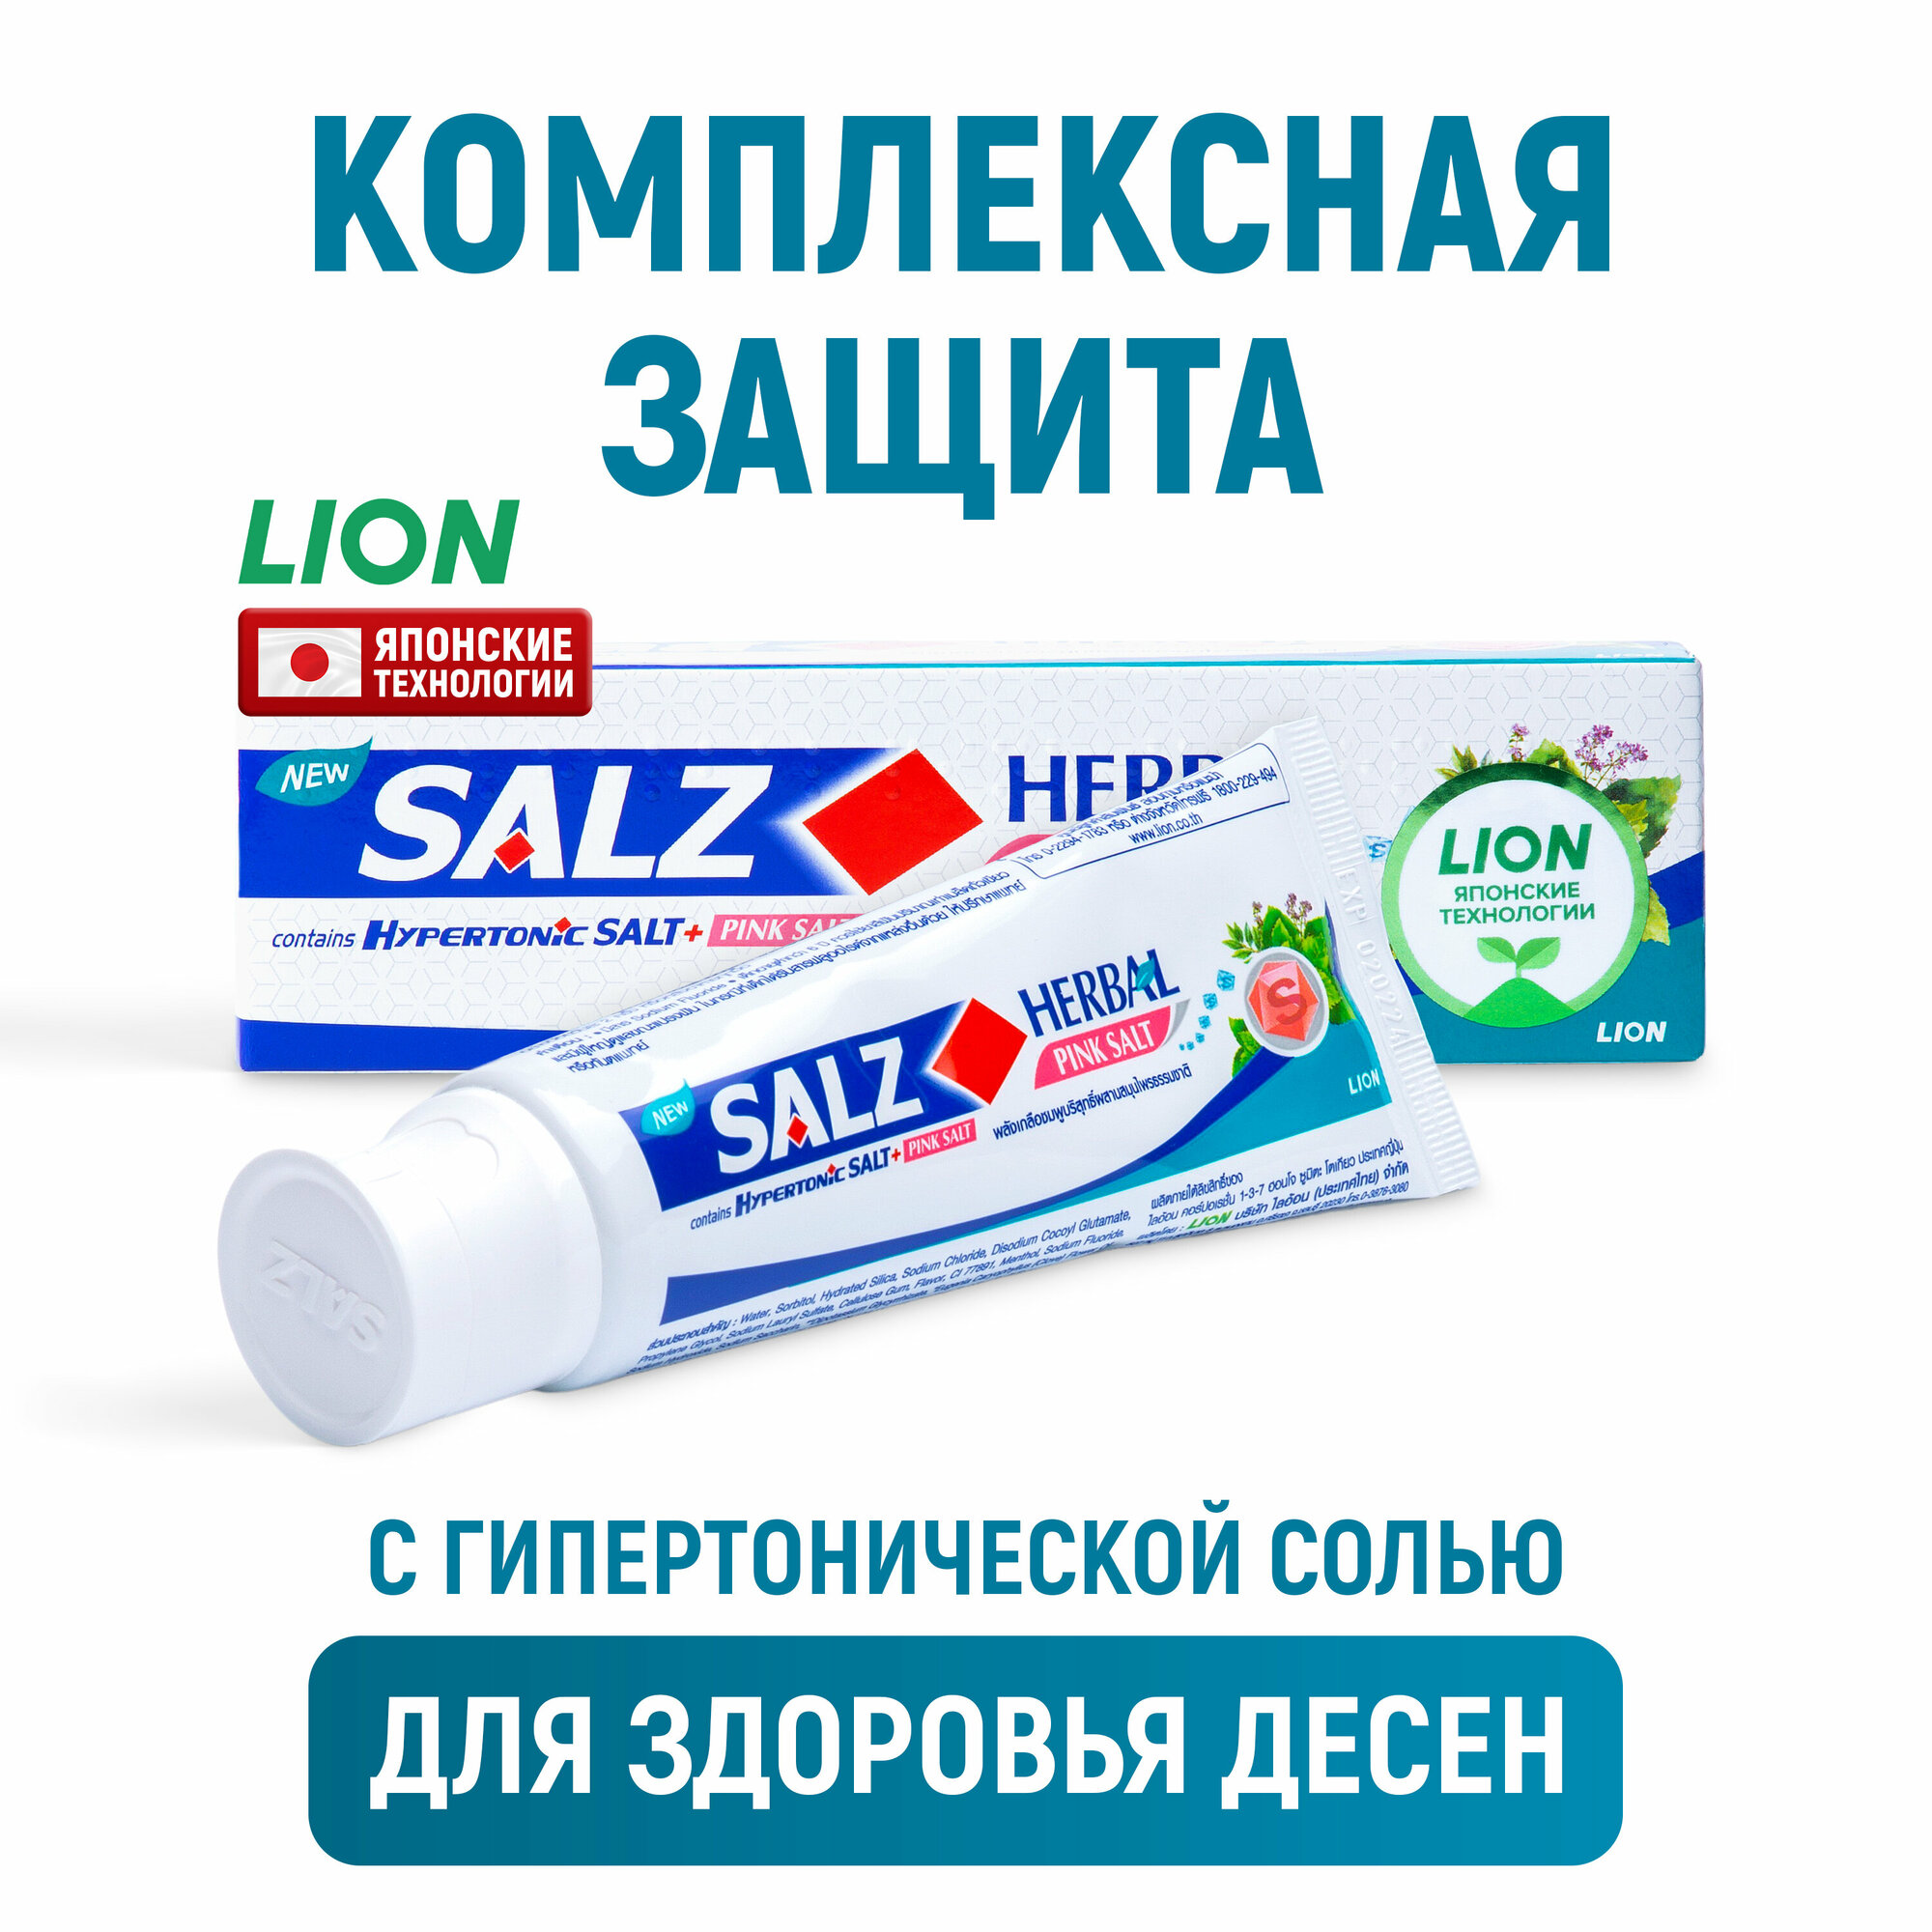 LION Salz Herbal Паста зубная с розовой гималайской солью, 90 г